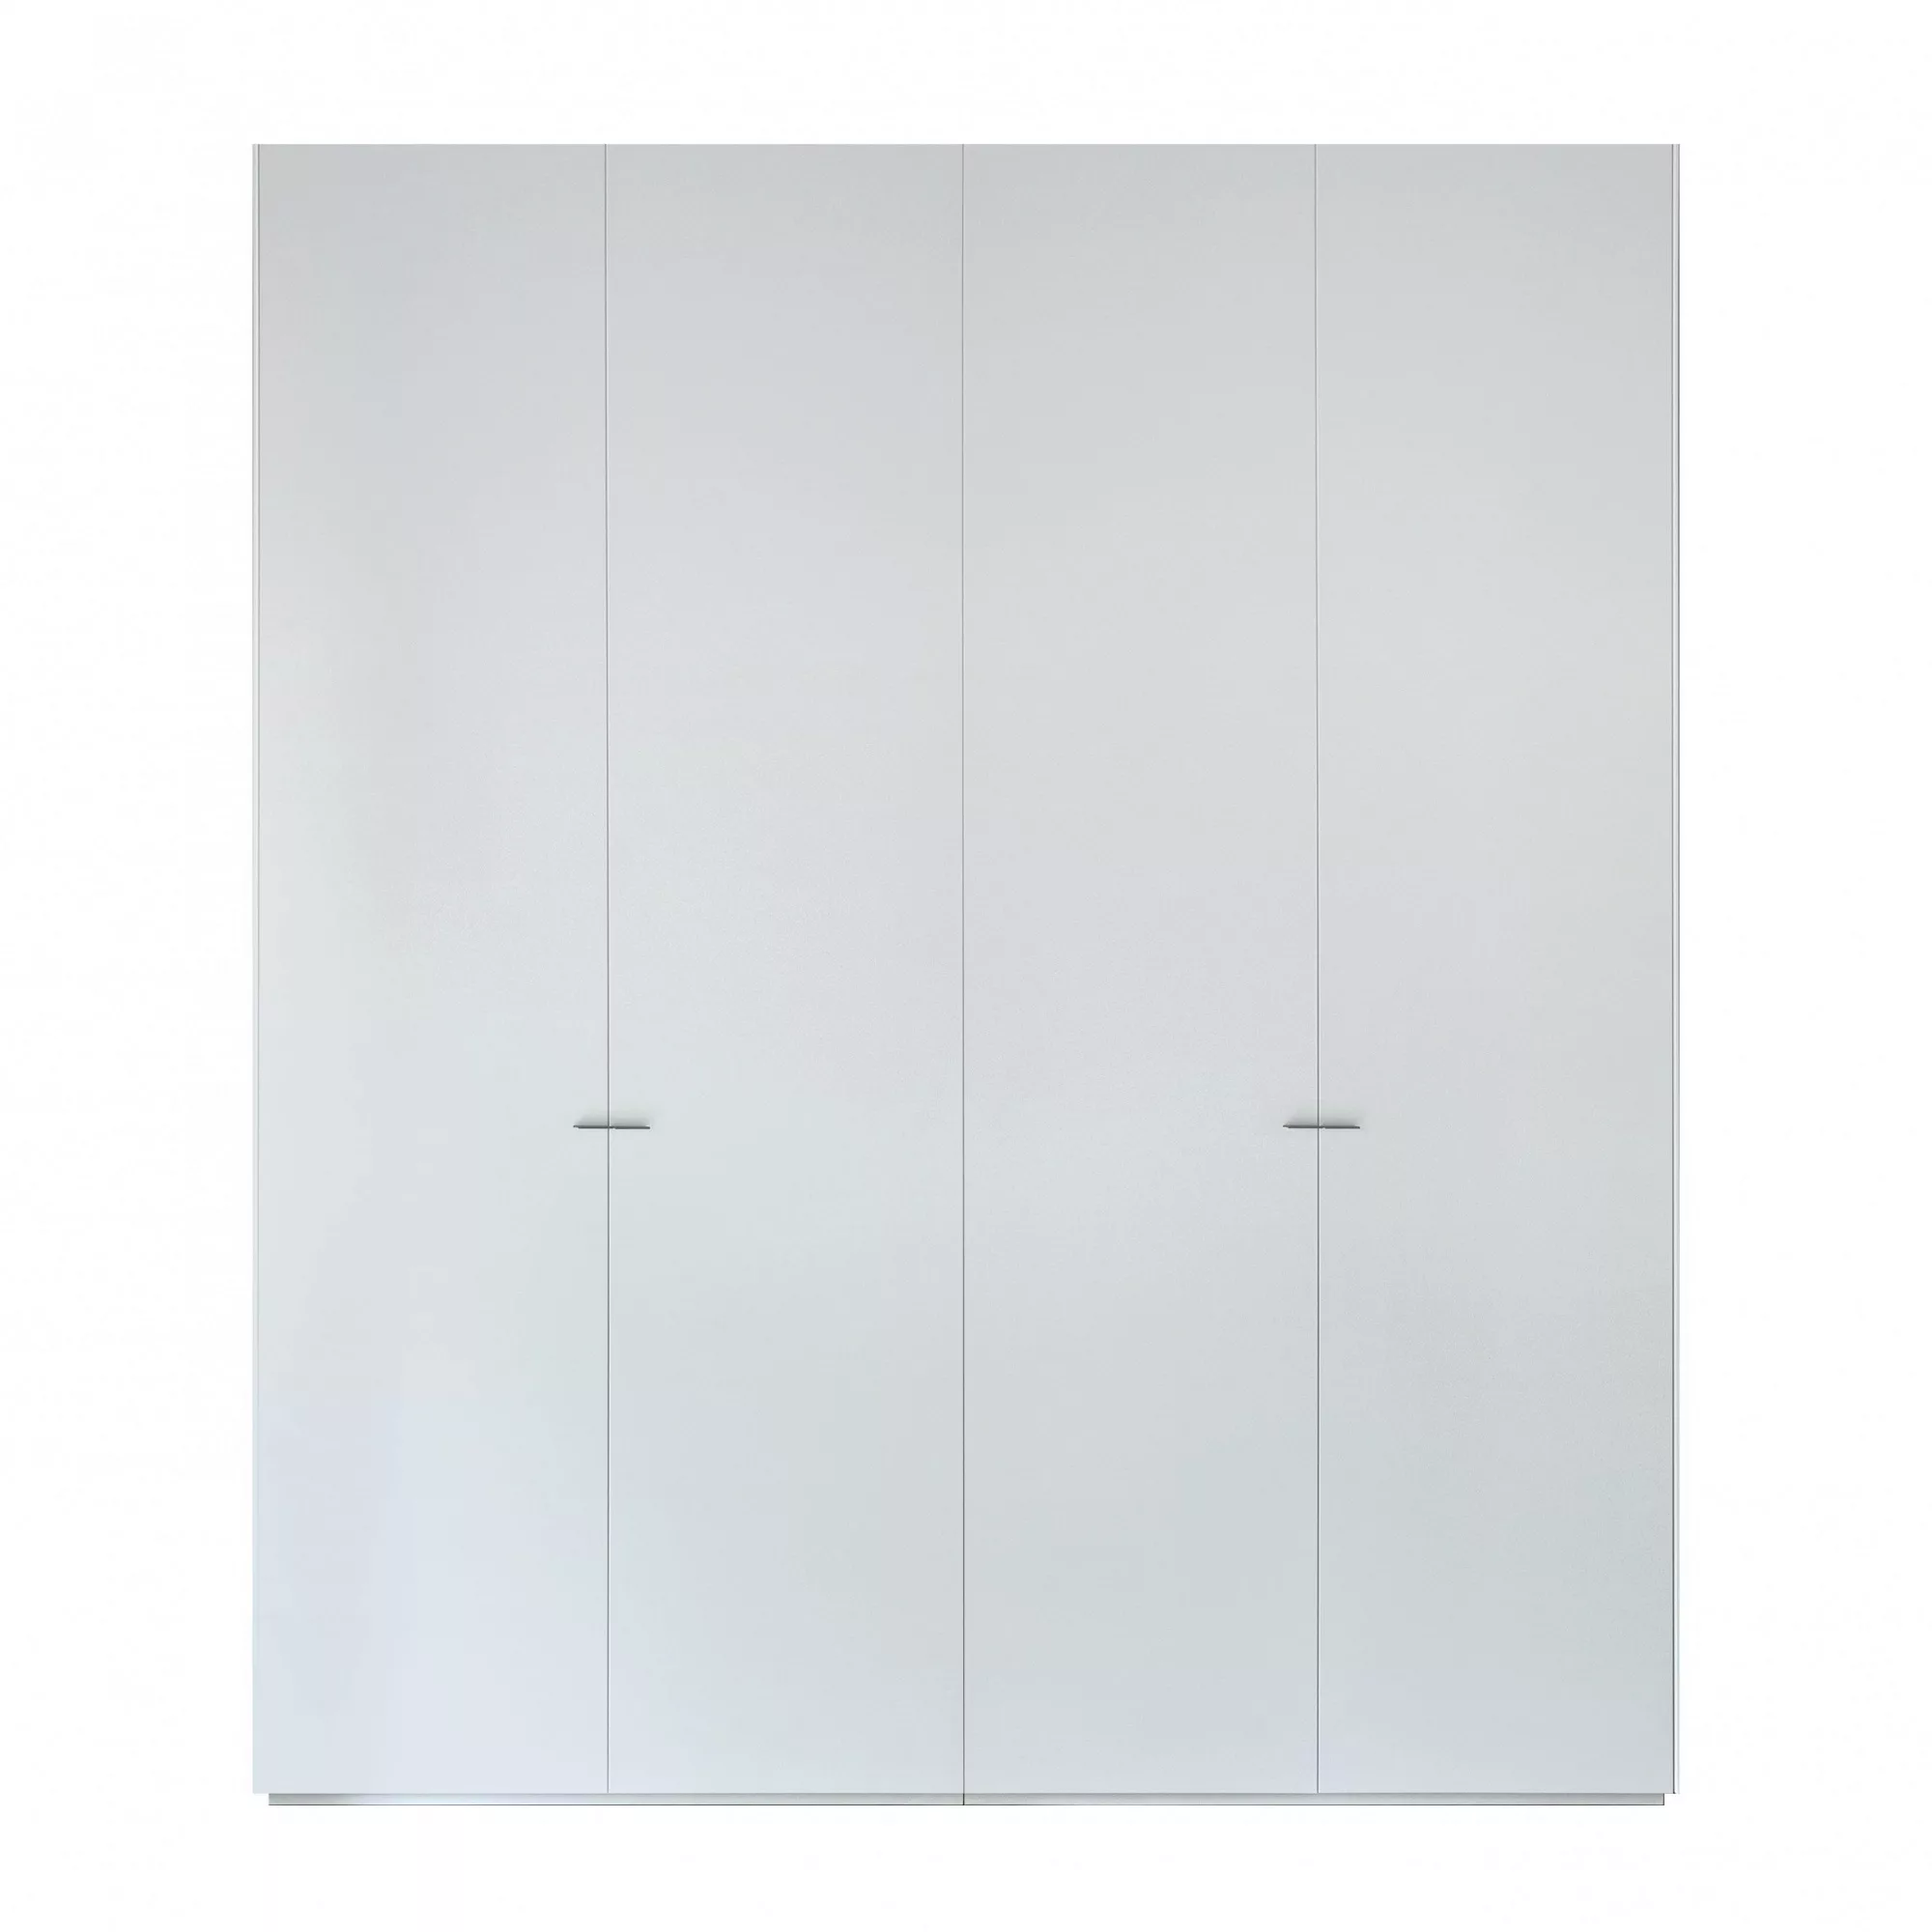 Piure - Nex Pur Schrank 201x234cm - weiß RAL 9016/MDF matt lackiert/2x Fach günstig online kaufen